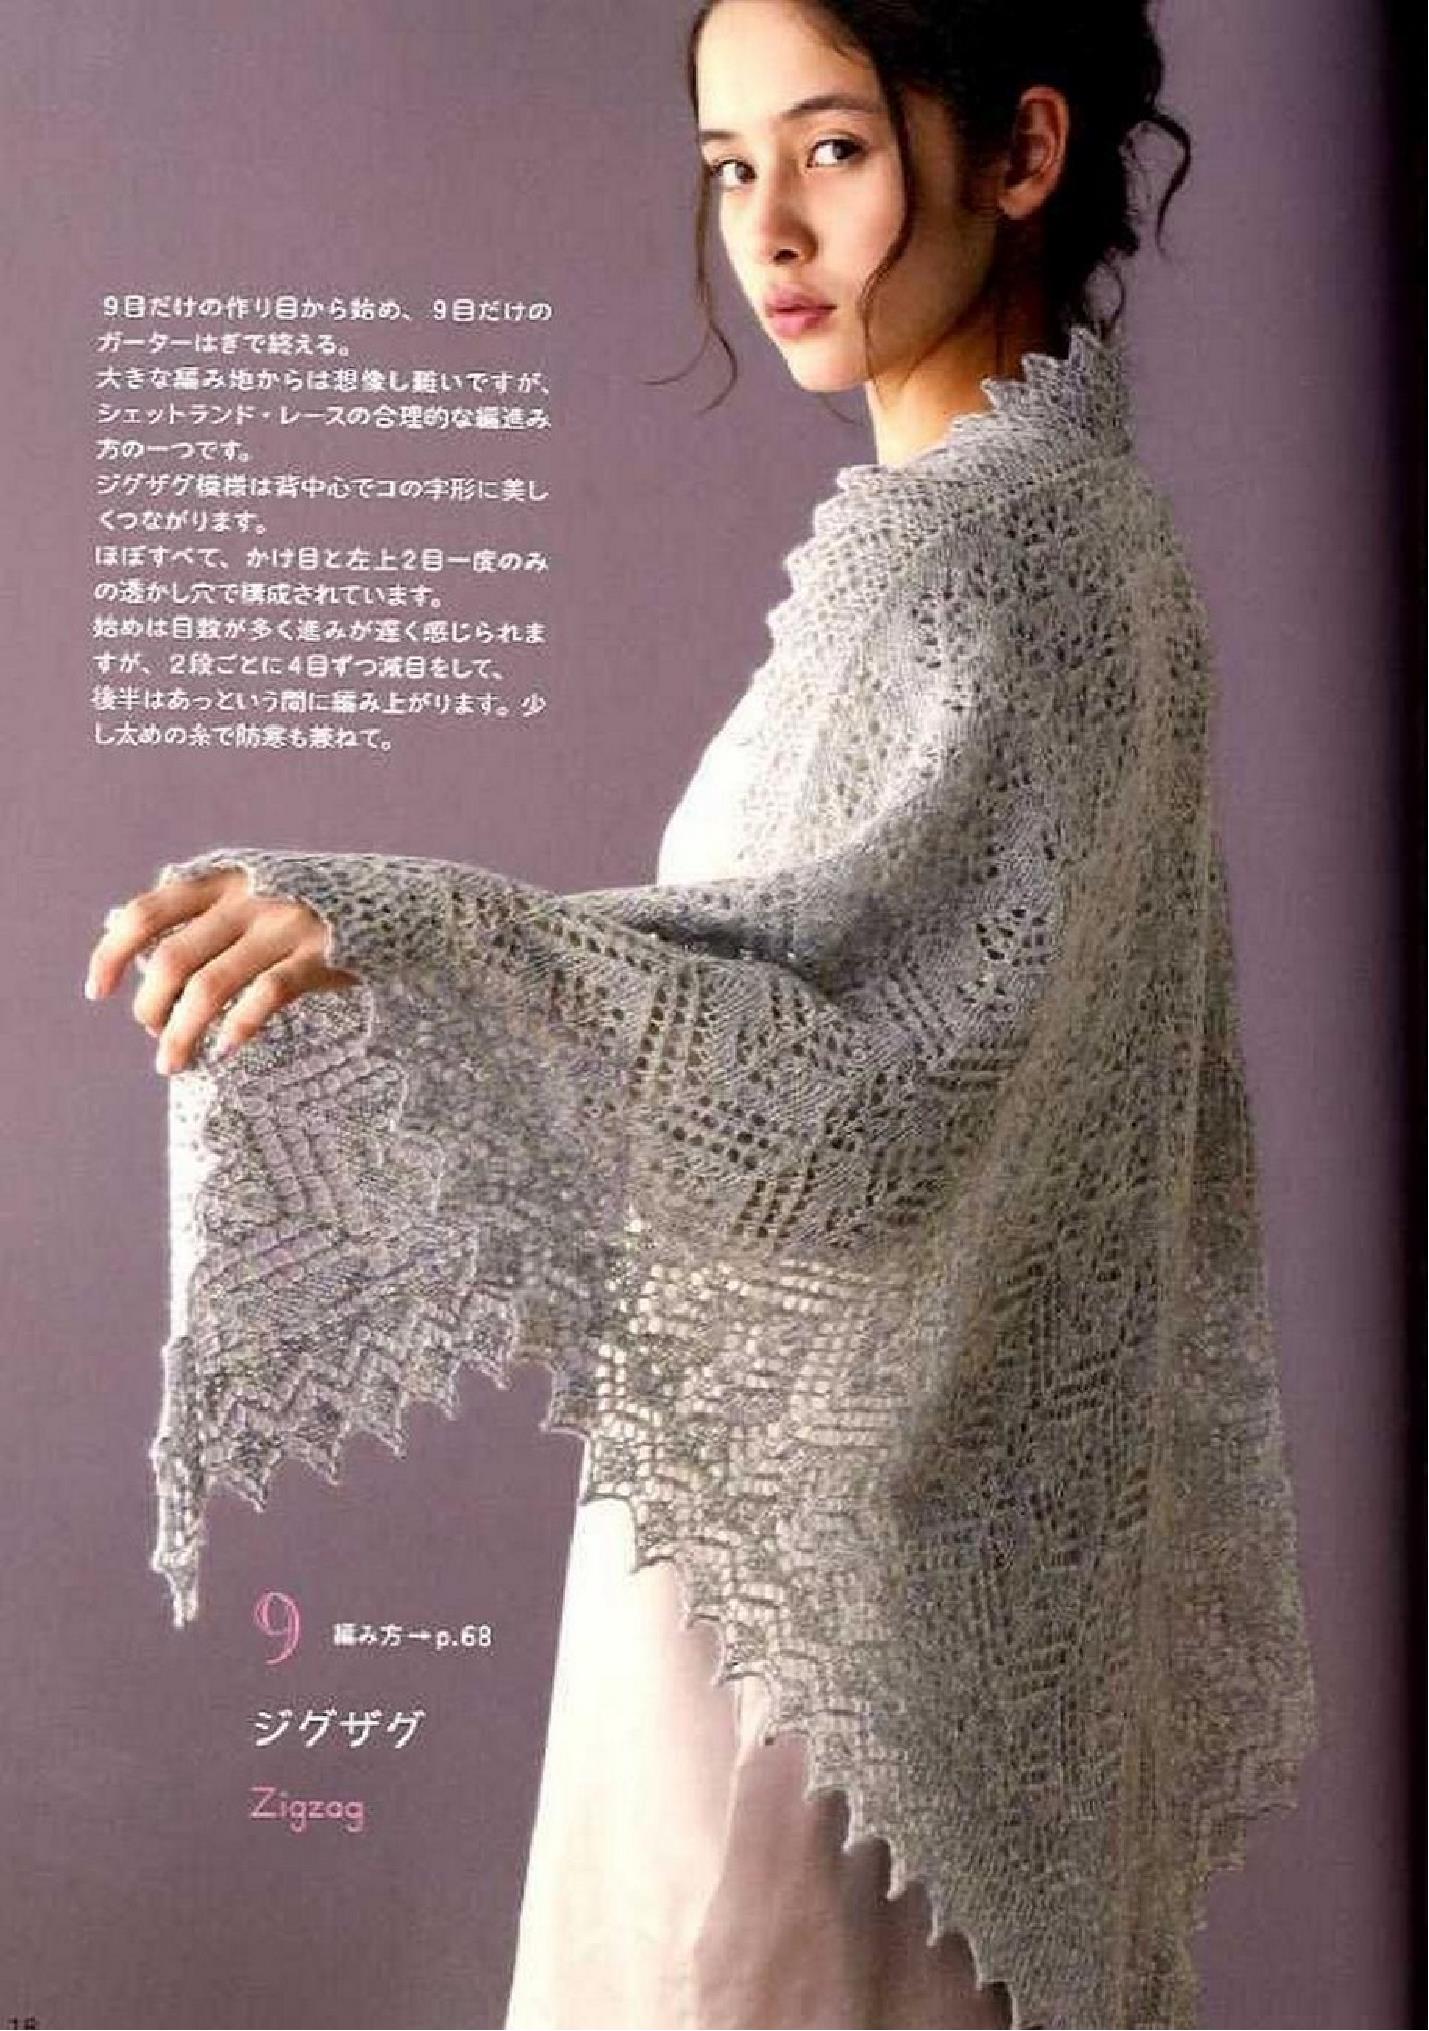 日本编织大师嶋田俊之创作的两款欧版传统蕾丝大披肩